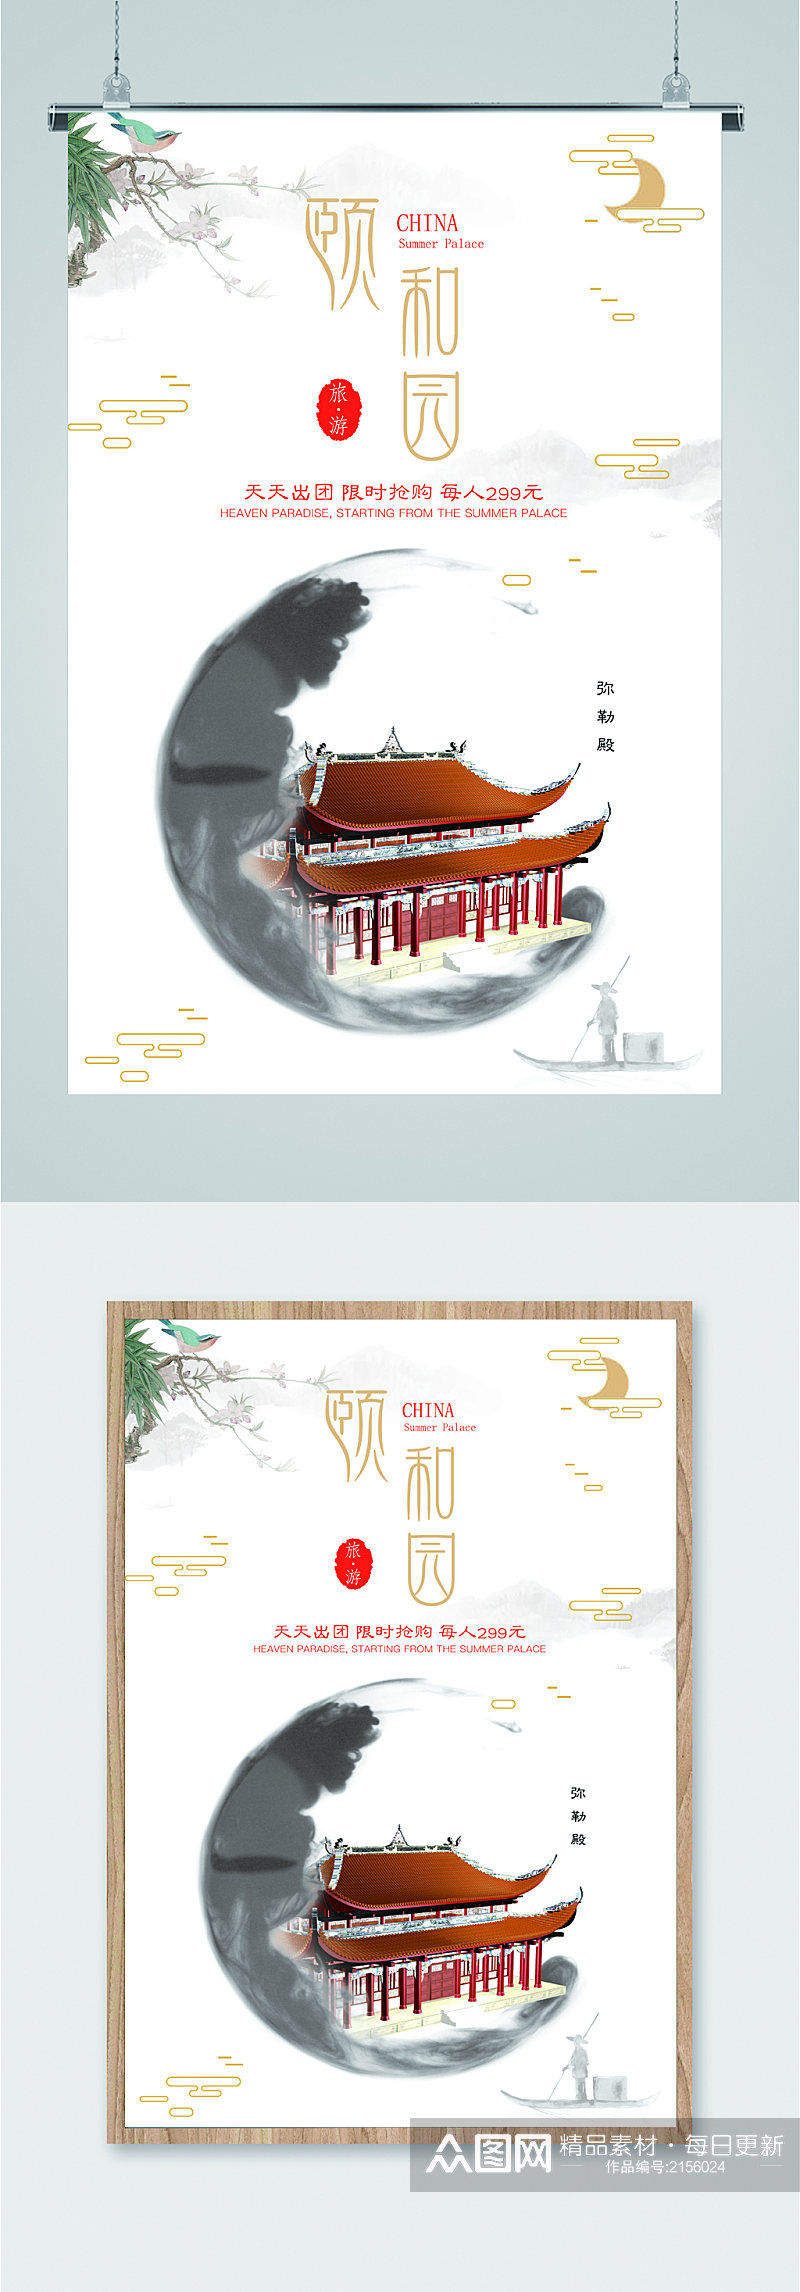 北京颐和园旅游海报素材